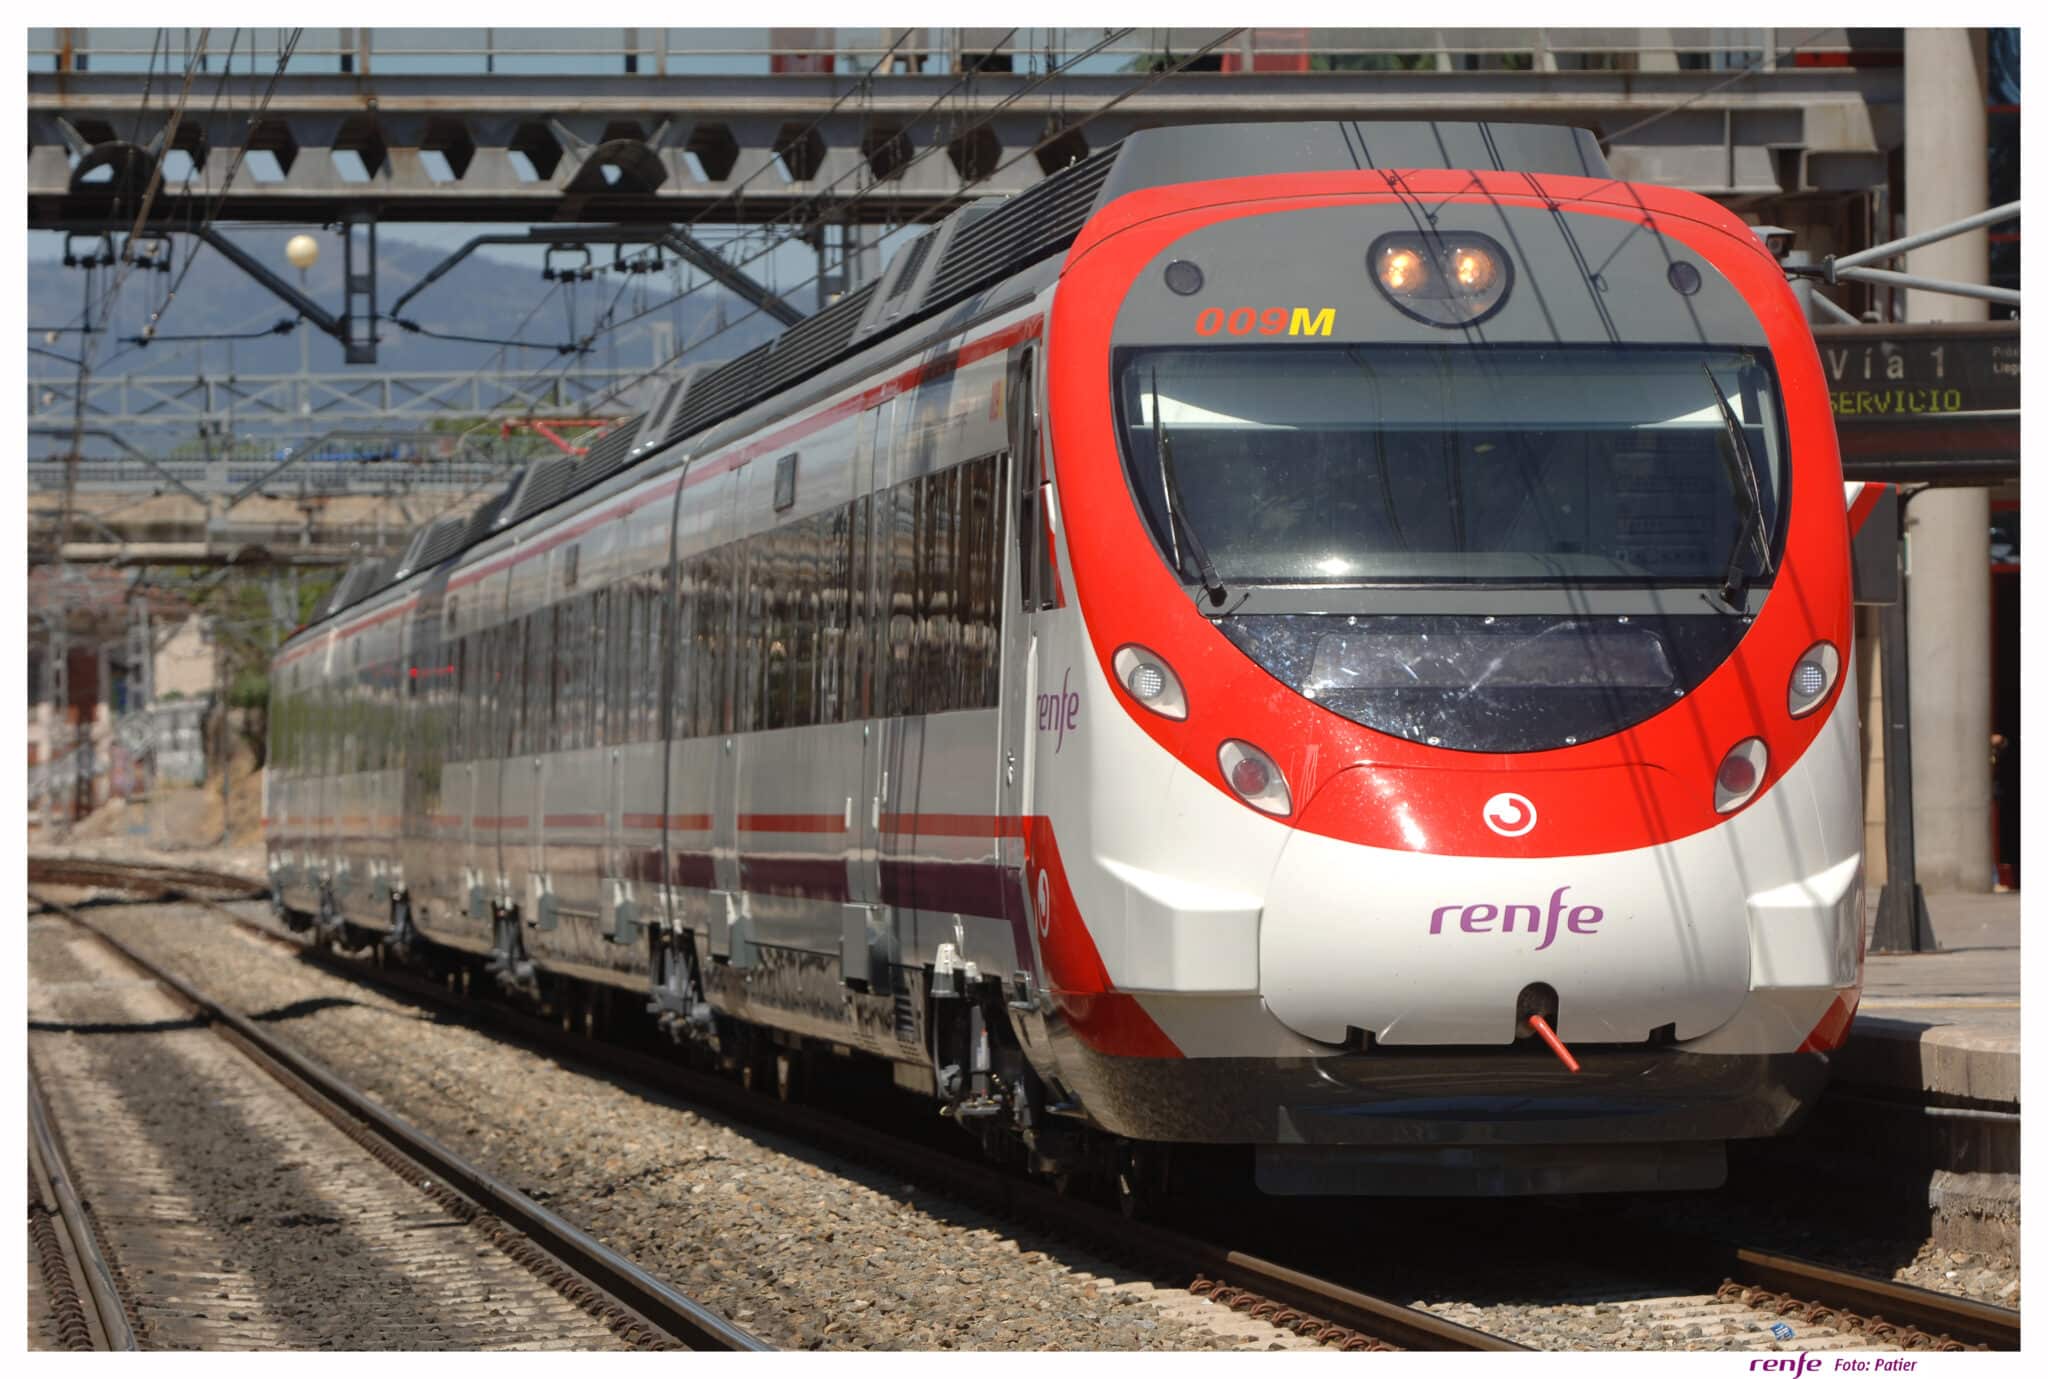 Un tren de Cercanías de Renfe.